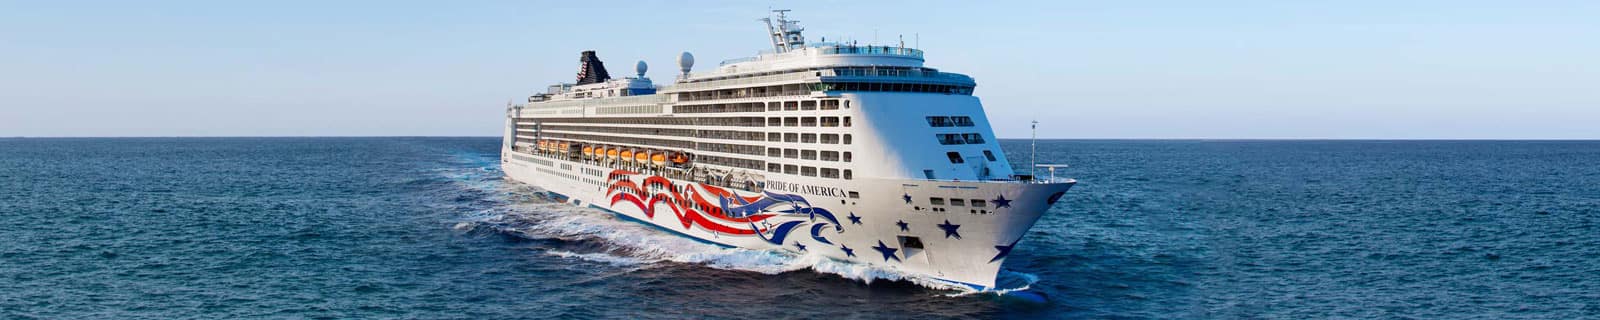 norwegian cruise pride of america reviews